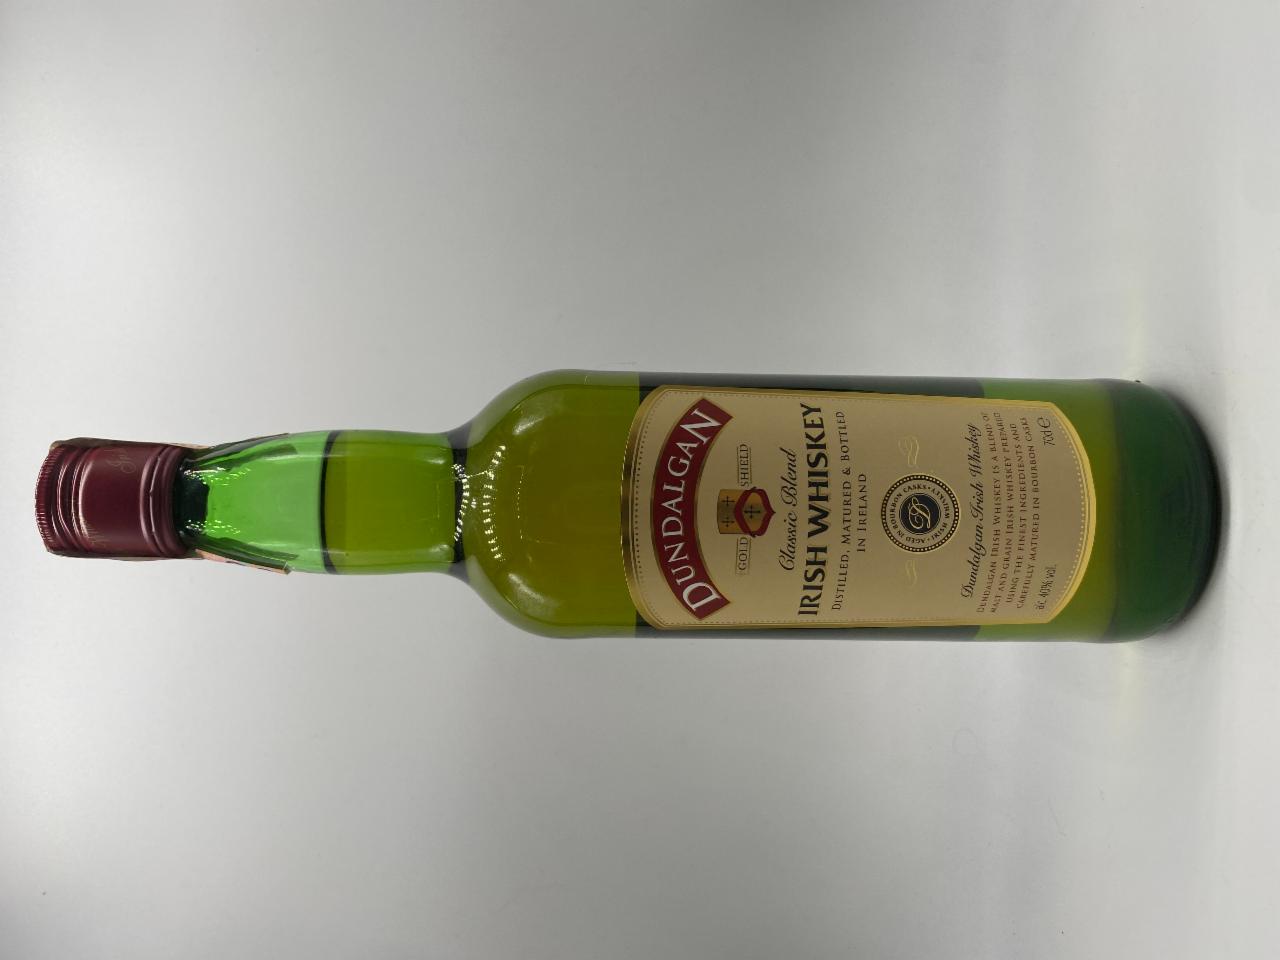 J&B scotch whisky 40% - hodnoty kJ nutriční a kalorie